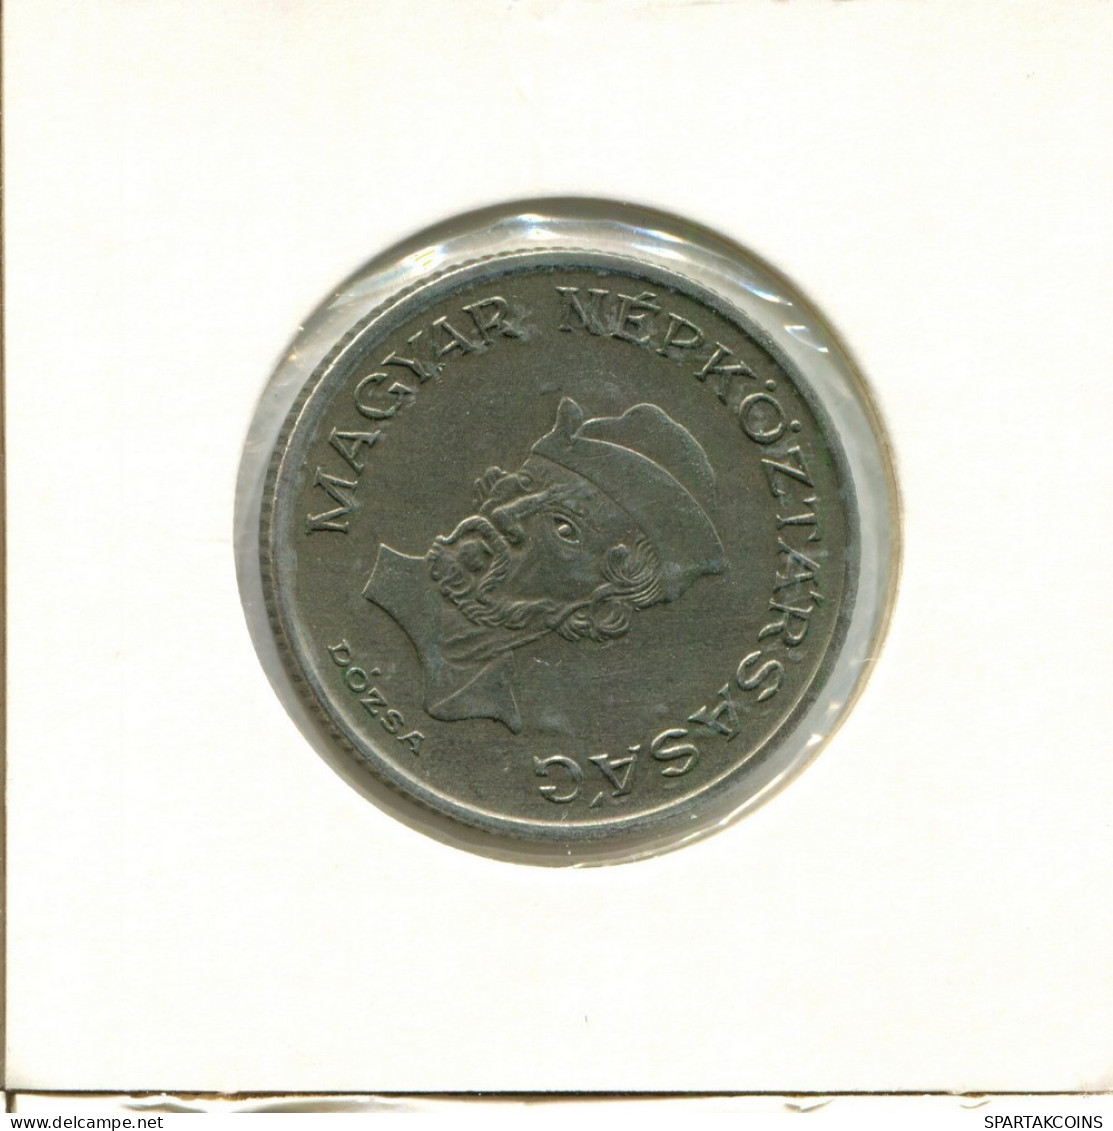 20 FORINT 1983 HUNGRÍA HUNGARY Moneda #AY529.E.A - Hungría